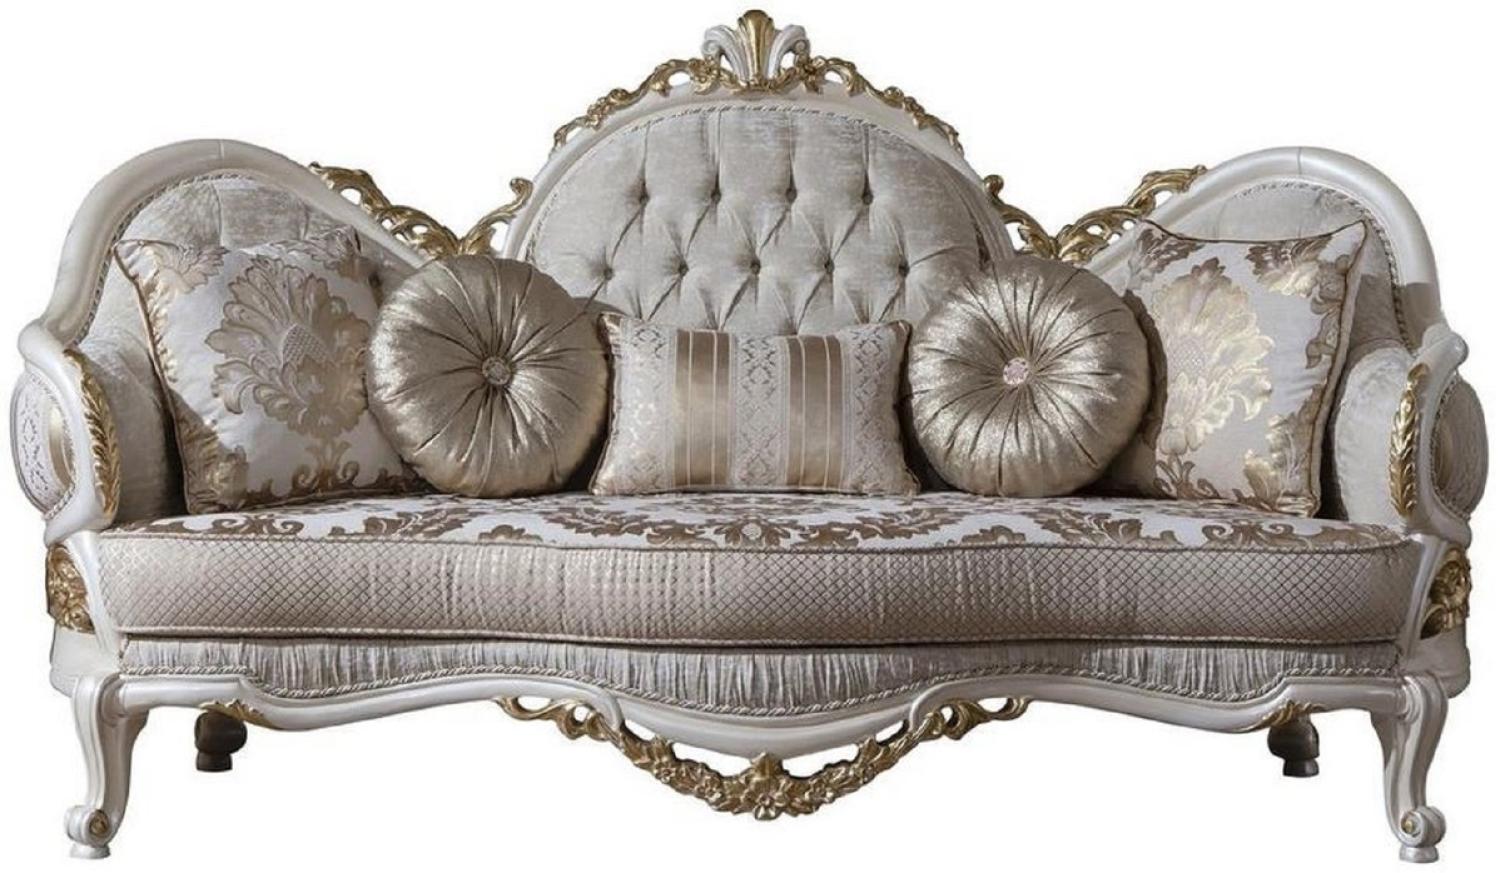 Casa Padrino Luxus Barock Sofa Grau / Weiß / Gold 220 x 80 x H. 124 cm - Prunkvolles Wohnzimmer Sofa mit dekorativen Kissen Bild 1